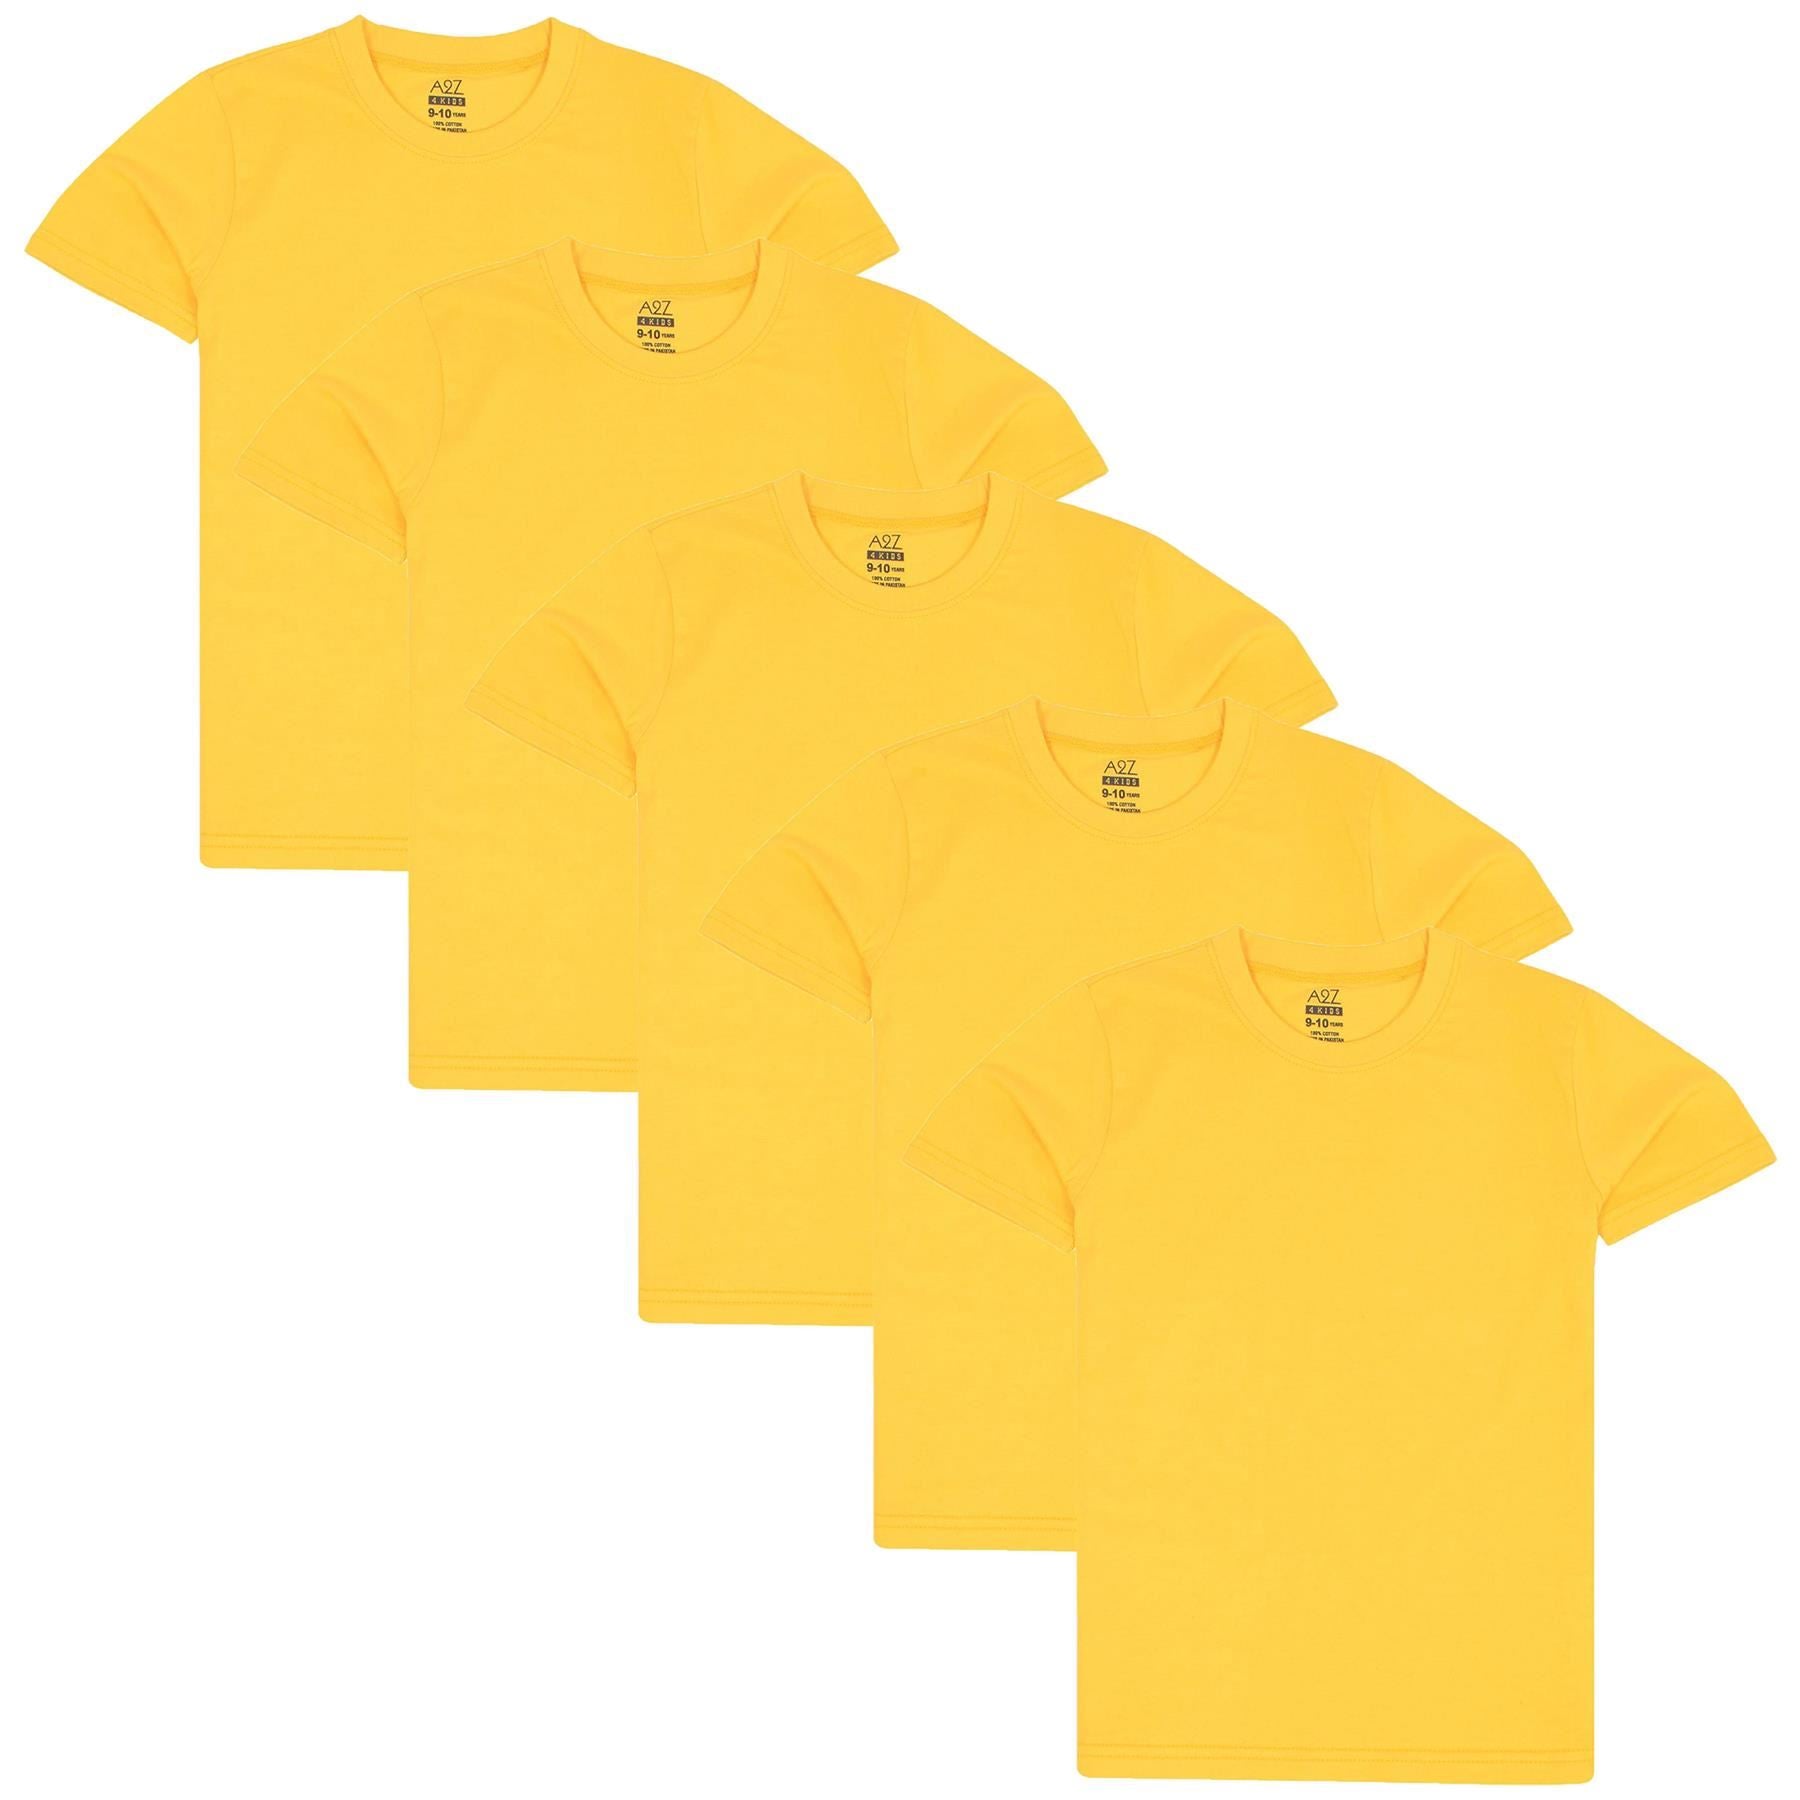 Girls Boys Pack Of 5 Plain PE School T Shirts Lightweight Summer Soft Feel Top